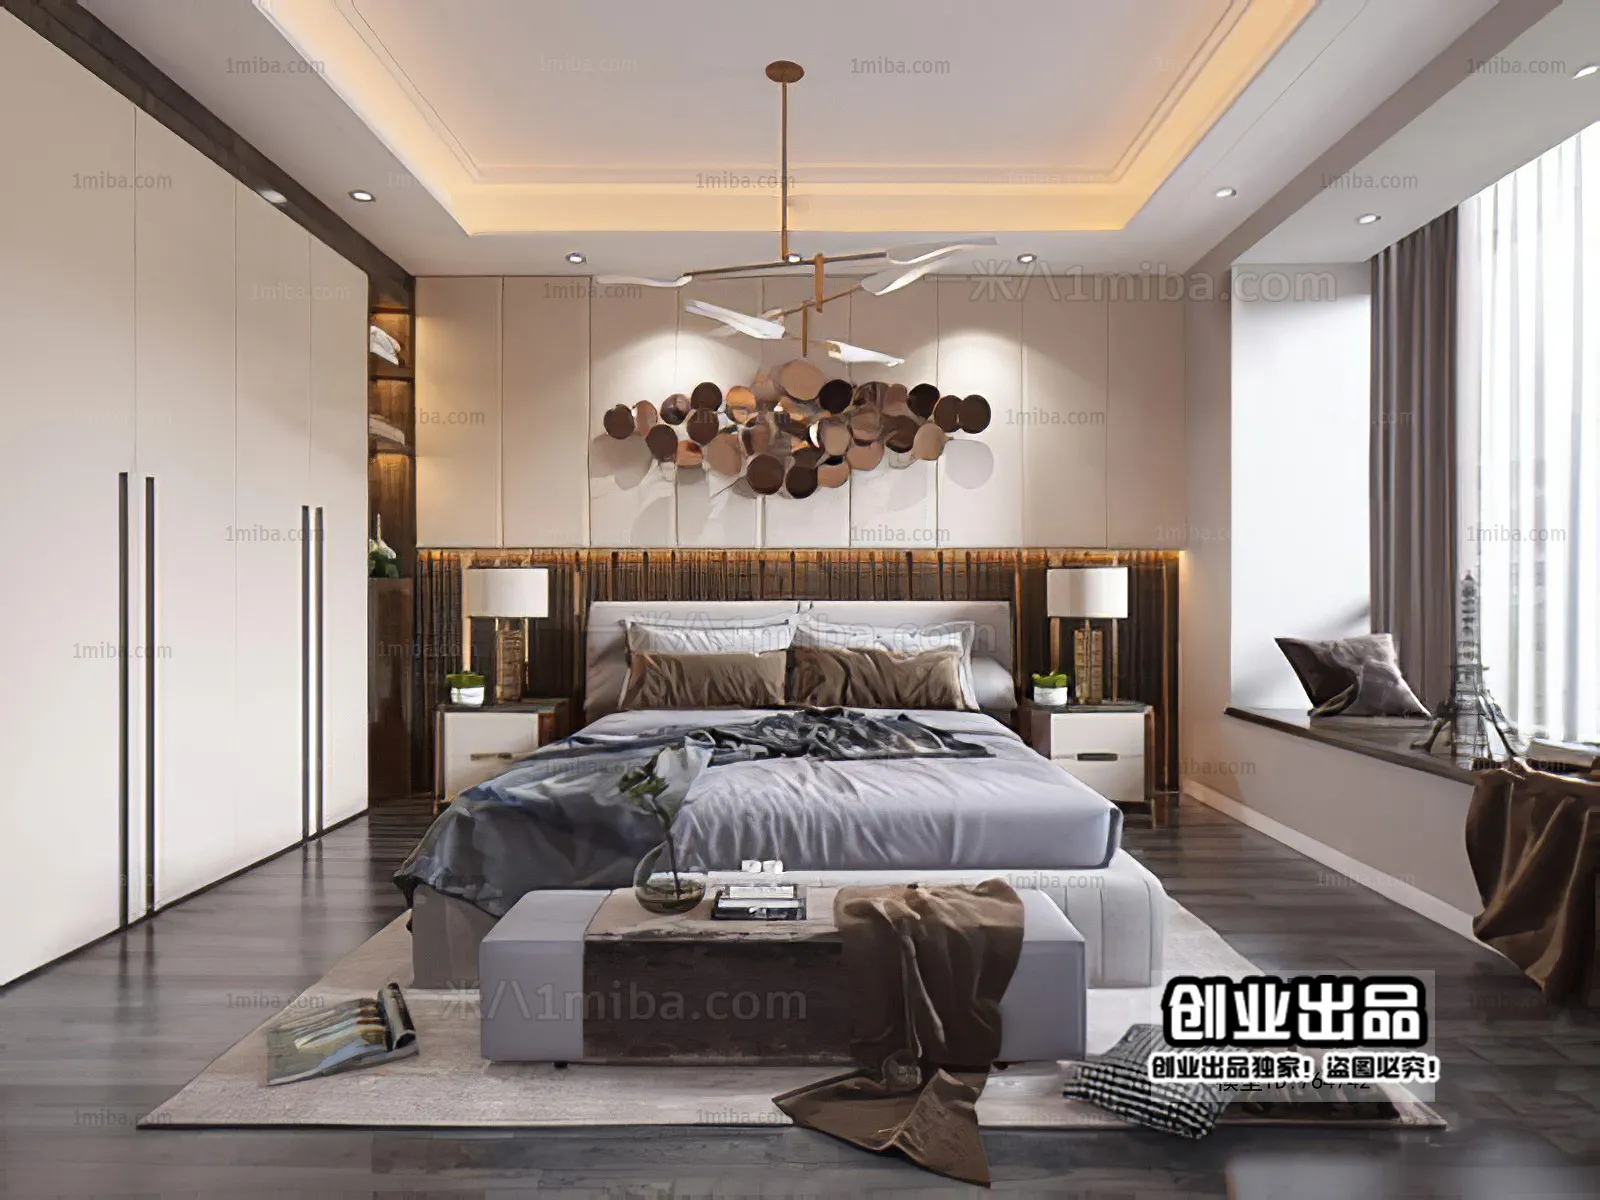 Bedroom – Modern Interior Design – 3D Models – 147